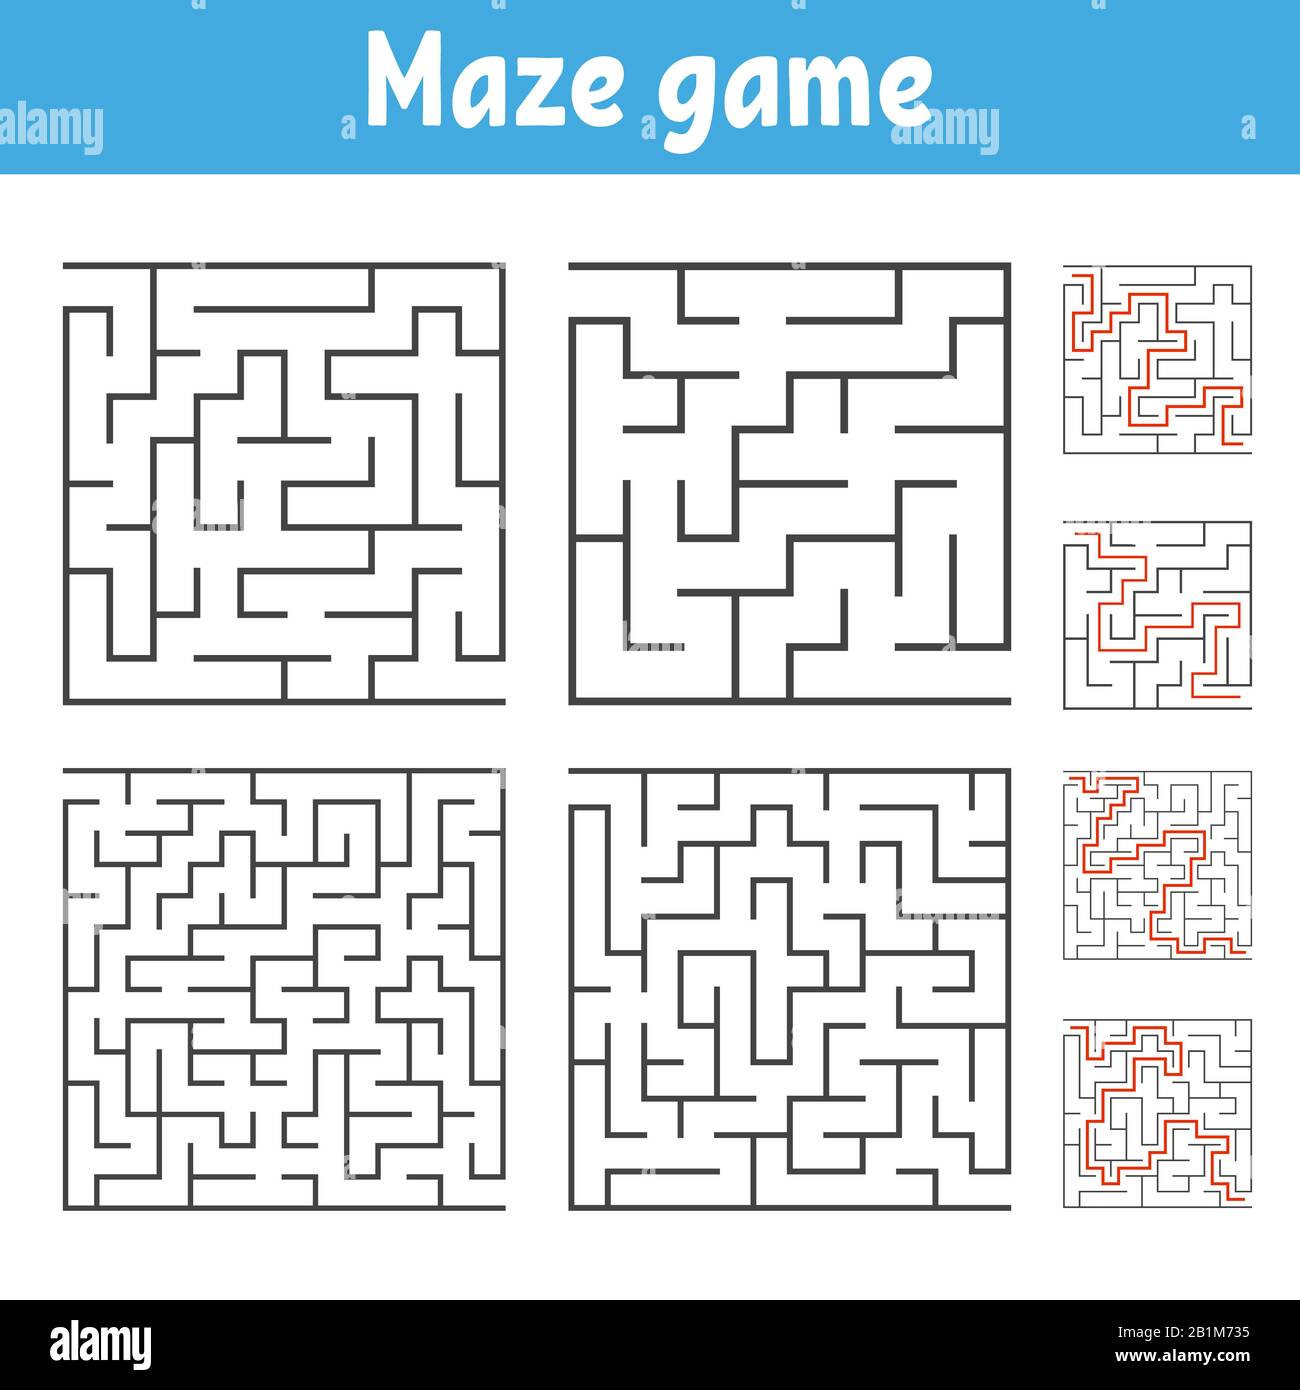 Un insieme di labirinti quadrati di vari livelli di difficoltà. Puzzle per bambini. Un ingresso, un'uscita. Labirinto enigma. Immagine vettoriale piatta iso Illustrazione Vettoriale